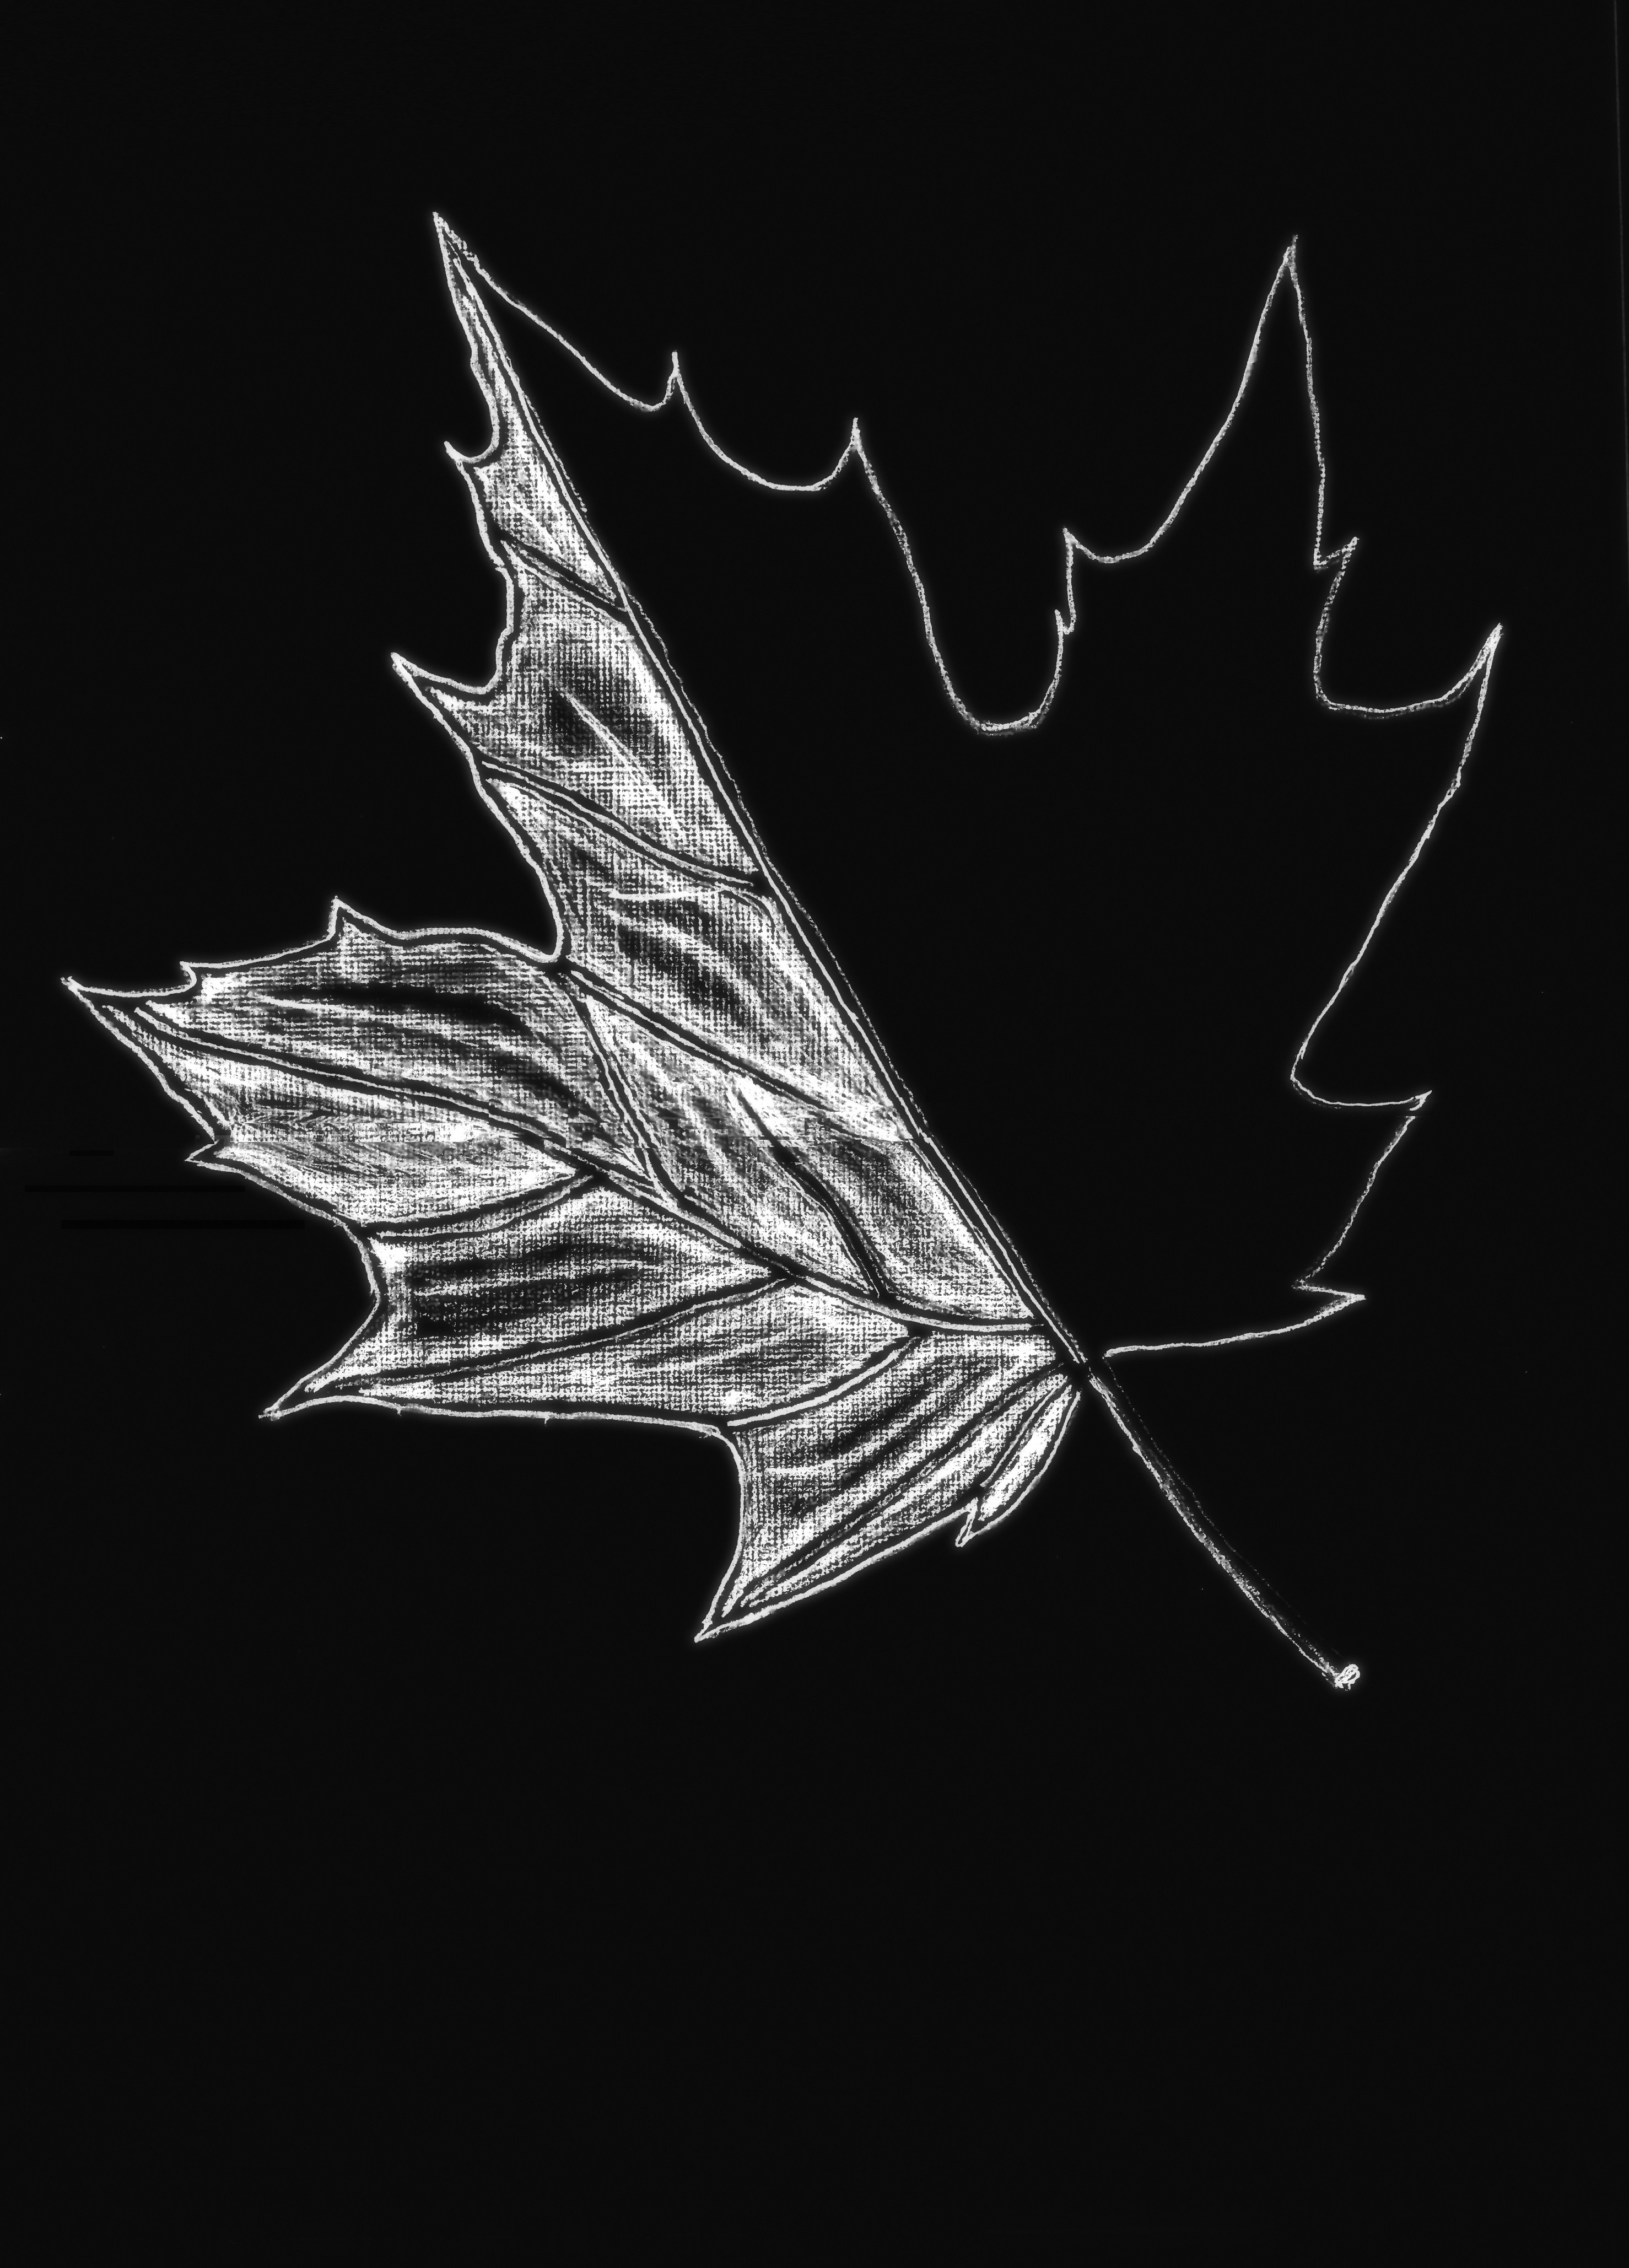 sugar maple – half leaf